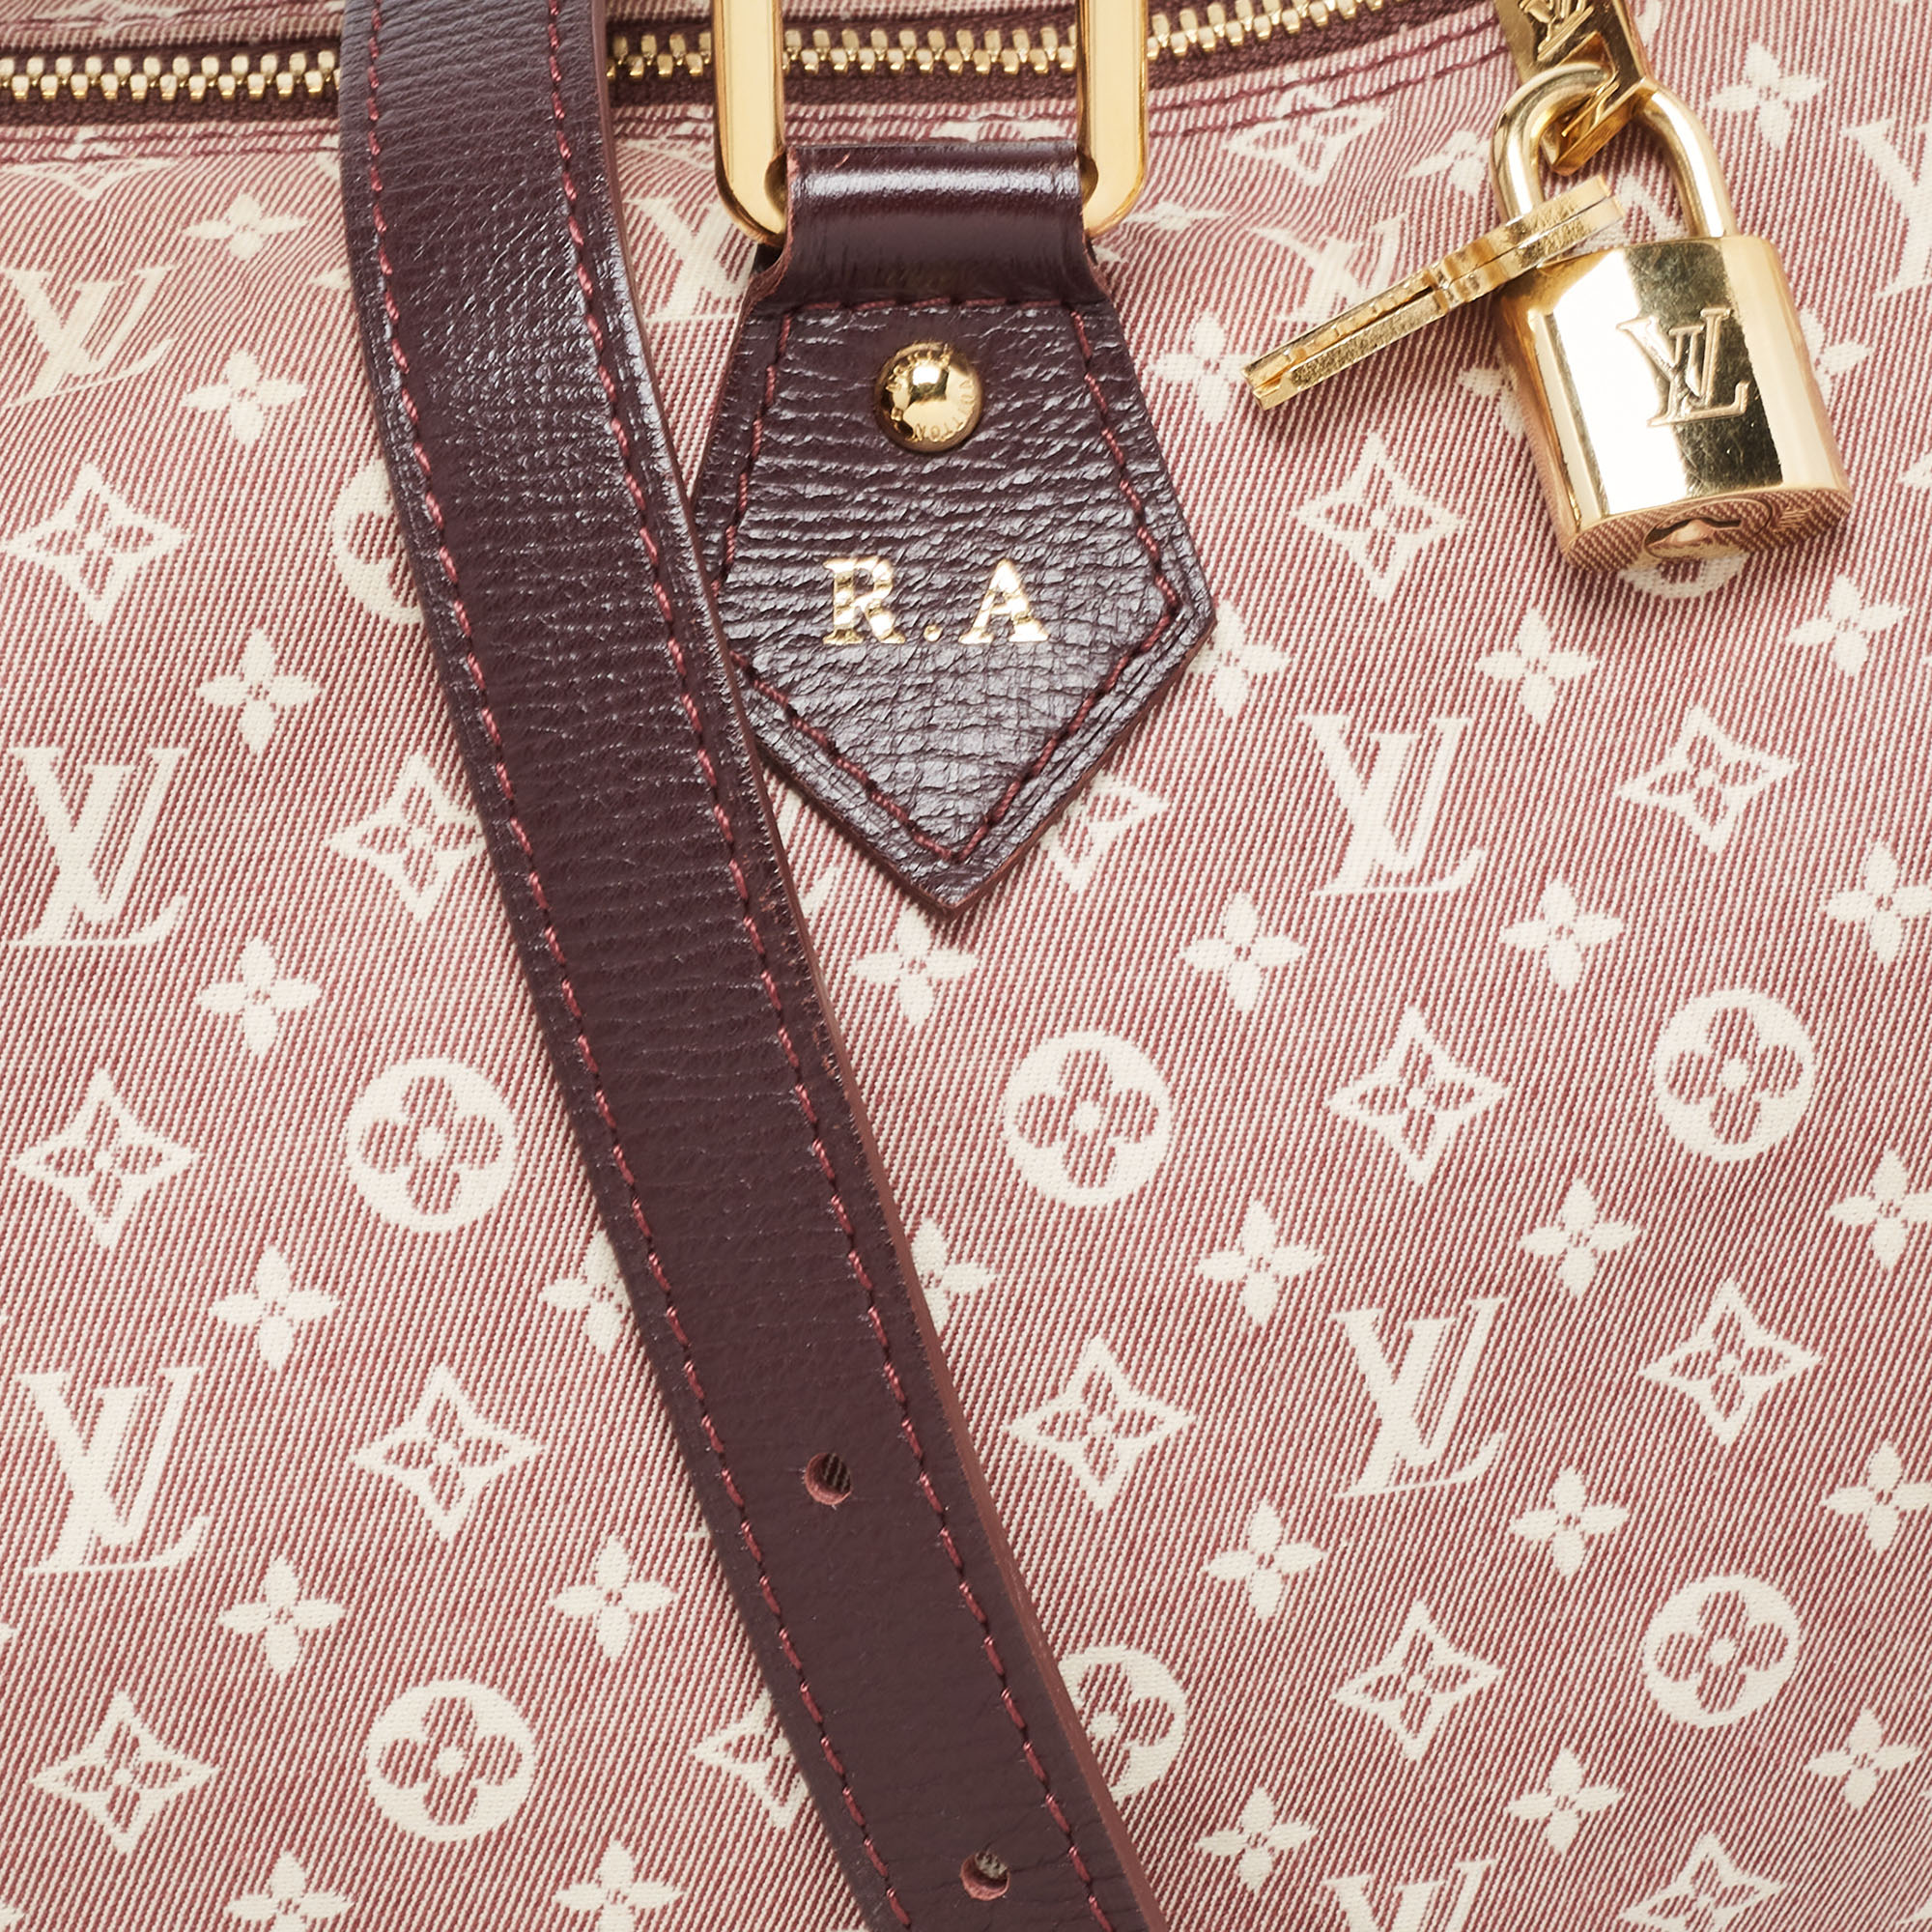 Louis Vuitton Sepia Monogram Mini Lin Idylle Speedy Bandouliere 30 with Strap